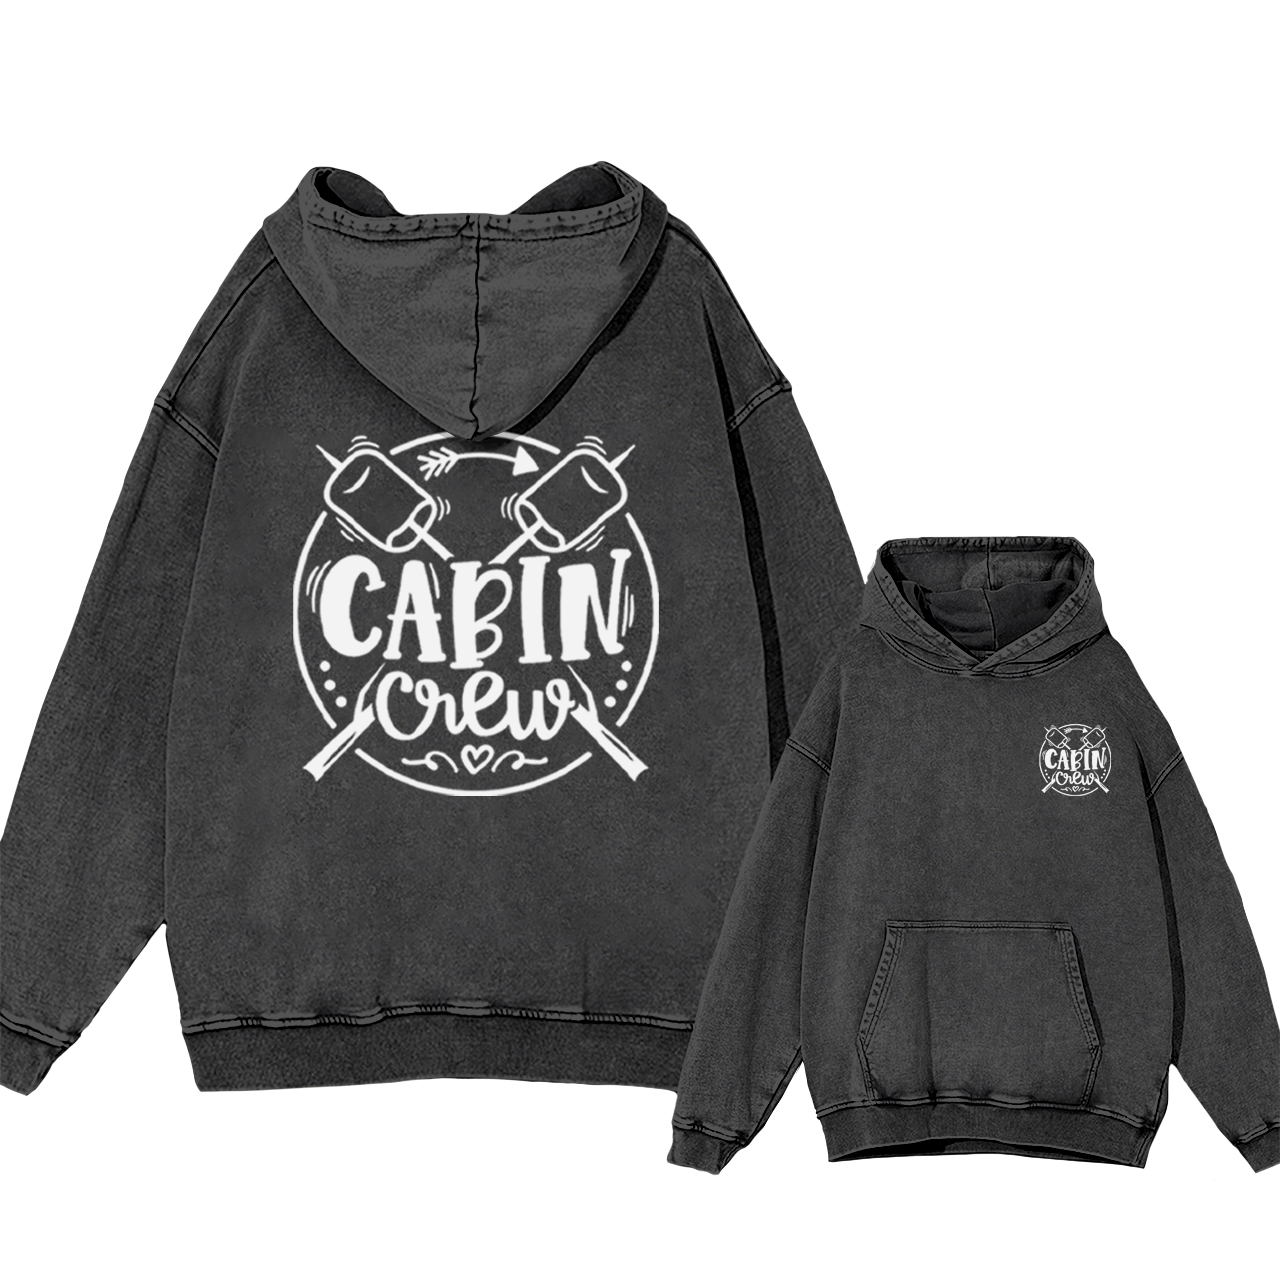 Cabin Crew Garment-Dye Hoodies